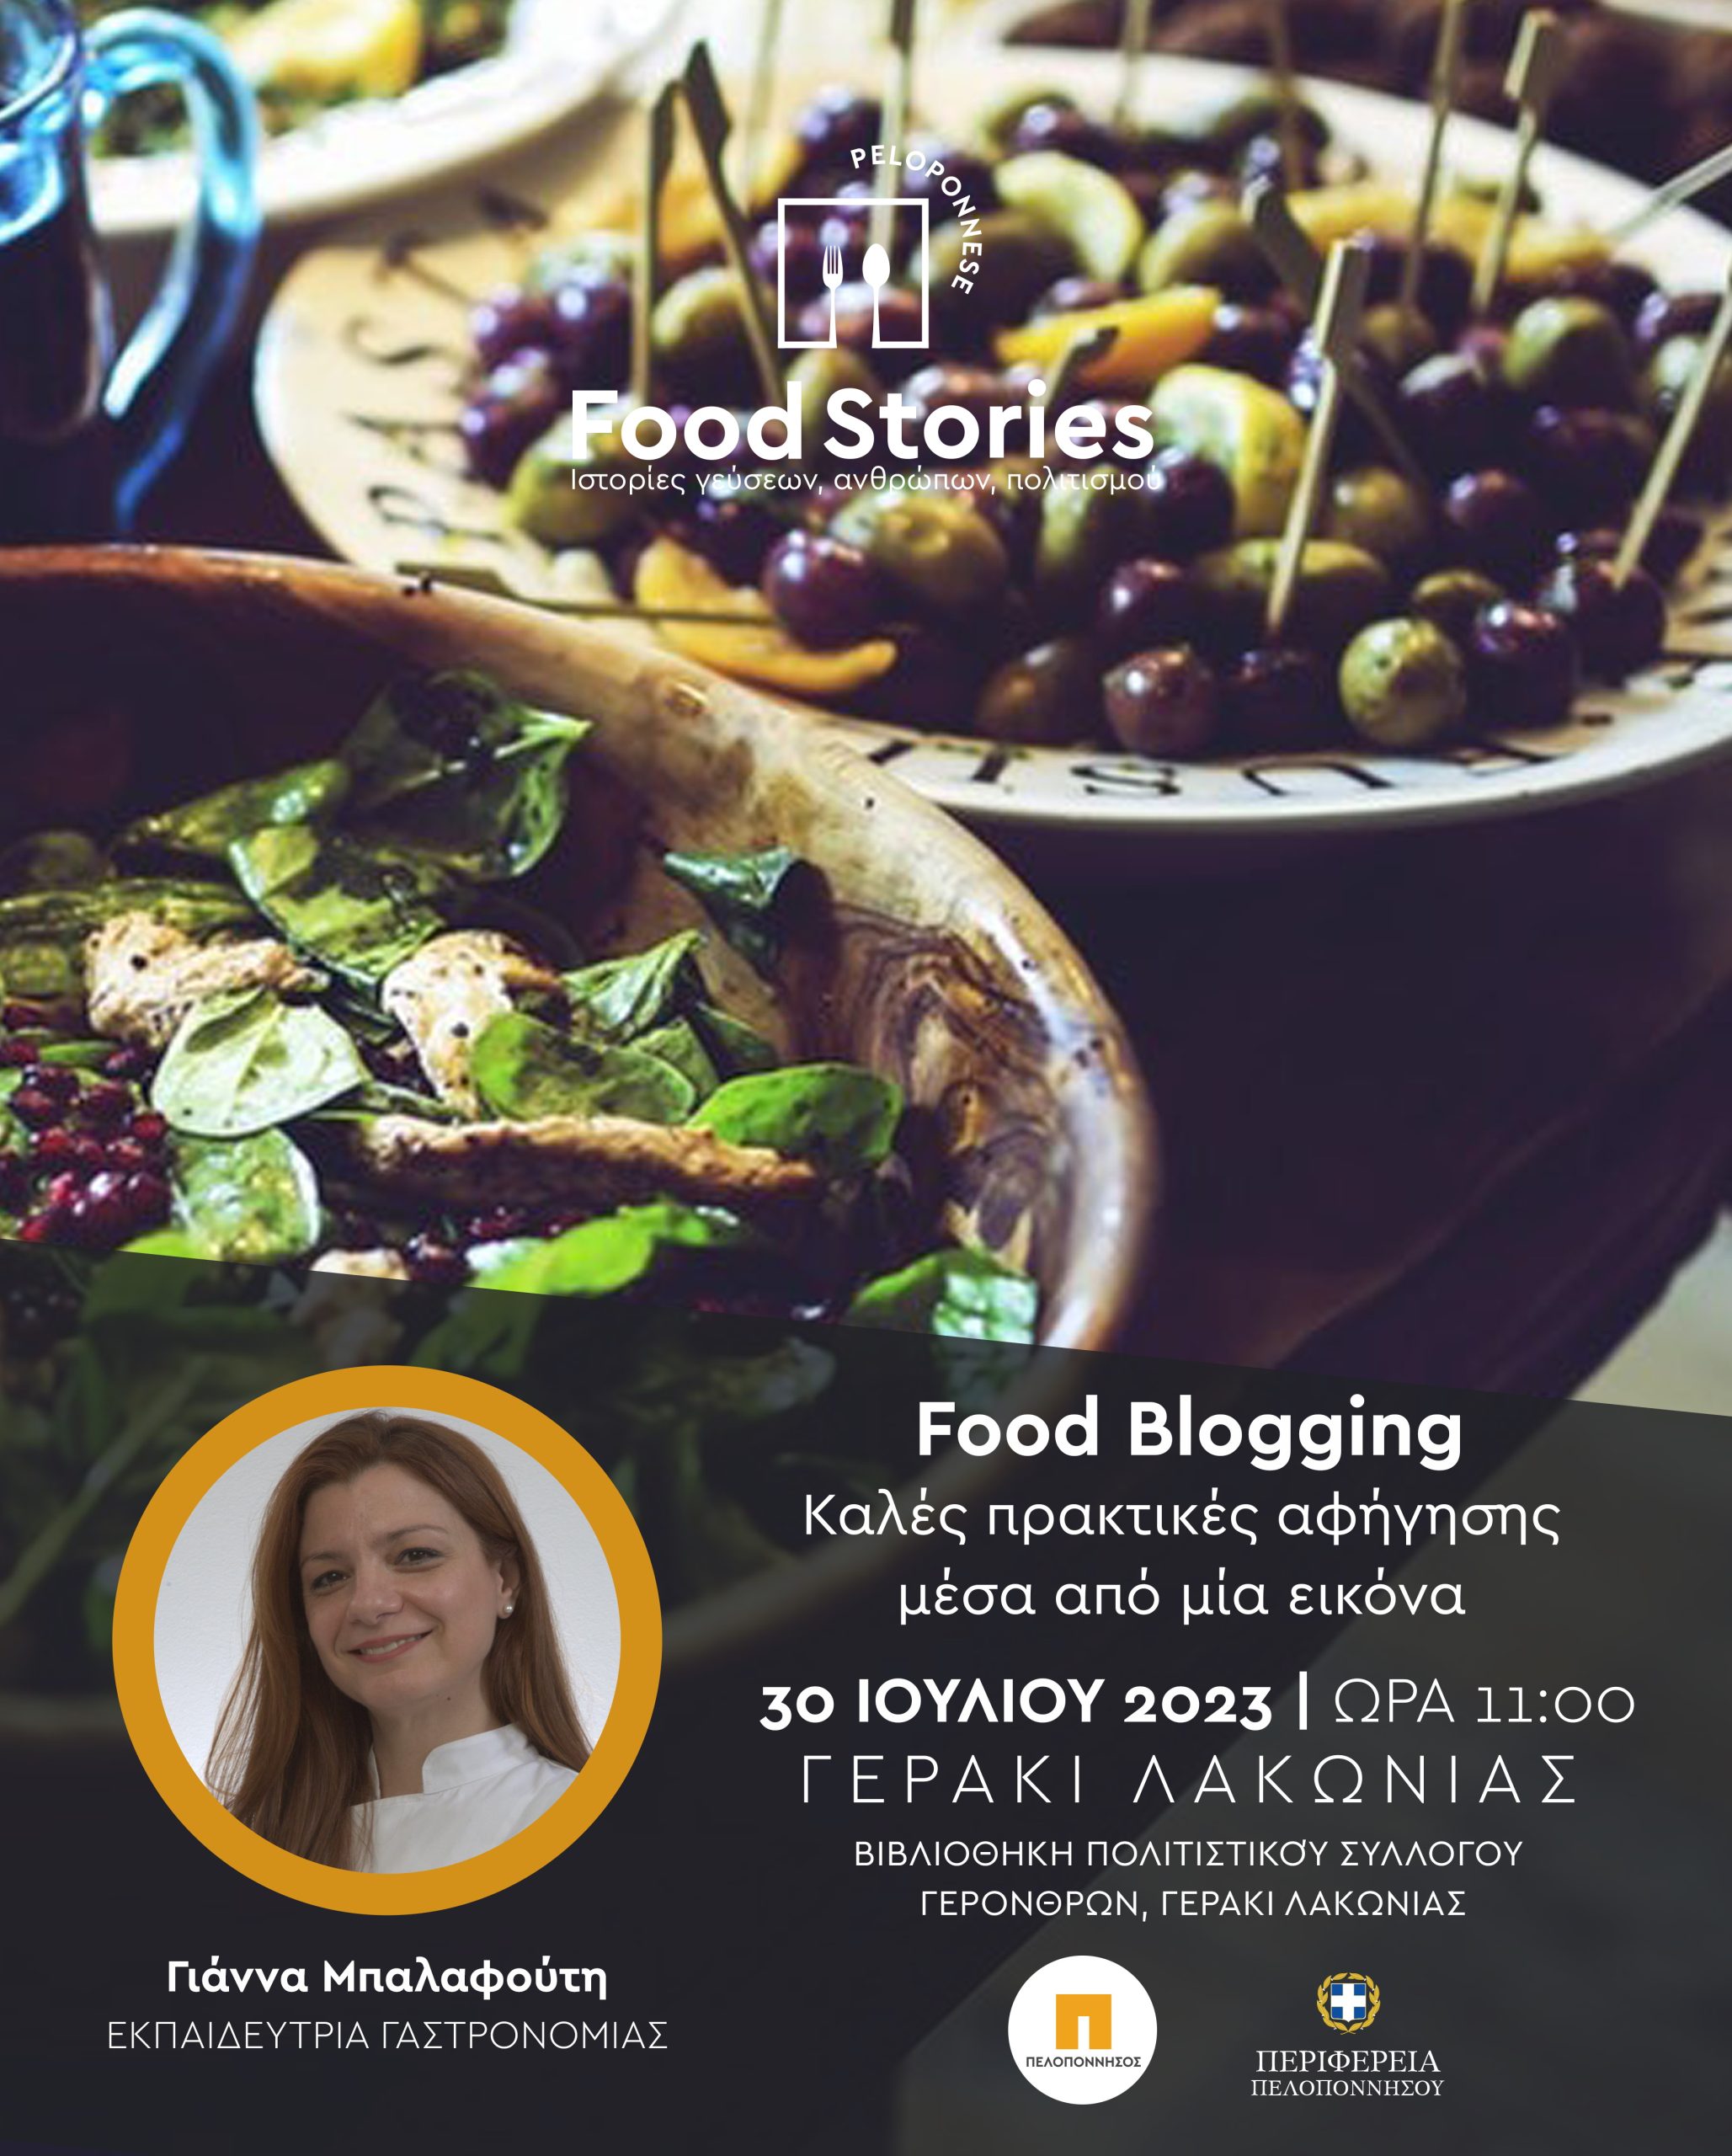 Συνεχίζεται μεθαύριο Κυριακή 30 Ιουλίου, στο Γεράκι, το 2ο Φεστιβάλ Γαστρονομίας Πελοποννήσου “Peloponnese Food Stories 2023 | Ιστορίες Γεύσεων, Ανθρώπων, Πολιτισμού”